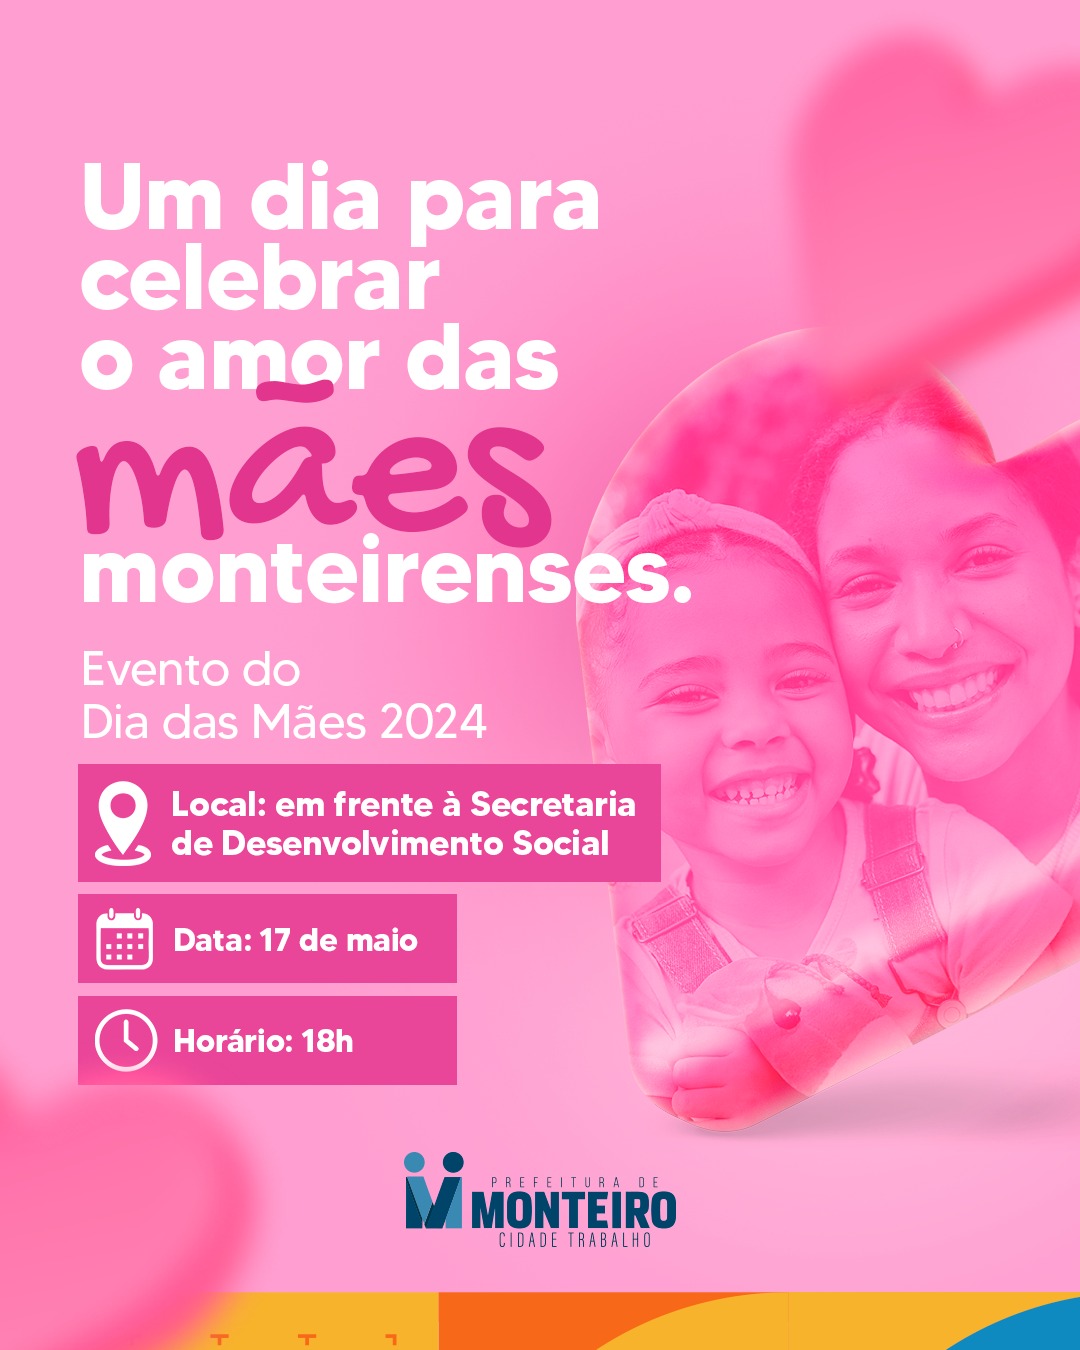 Secretaria de Desenvolvimento Social da Prefeitura de Monteiro realiza festa em homenagem ao dia das mães nesta sexta-feira